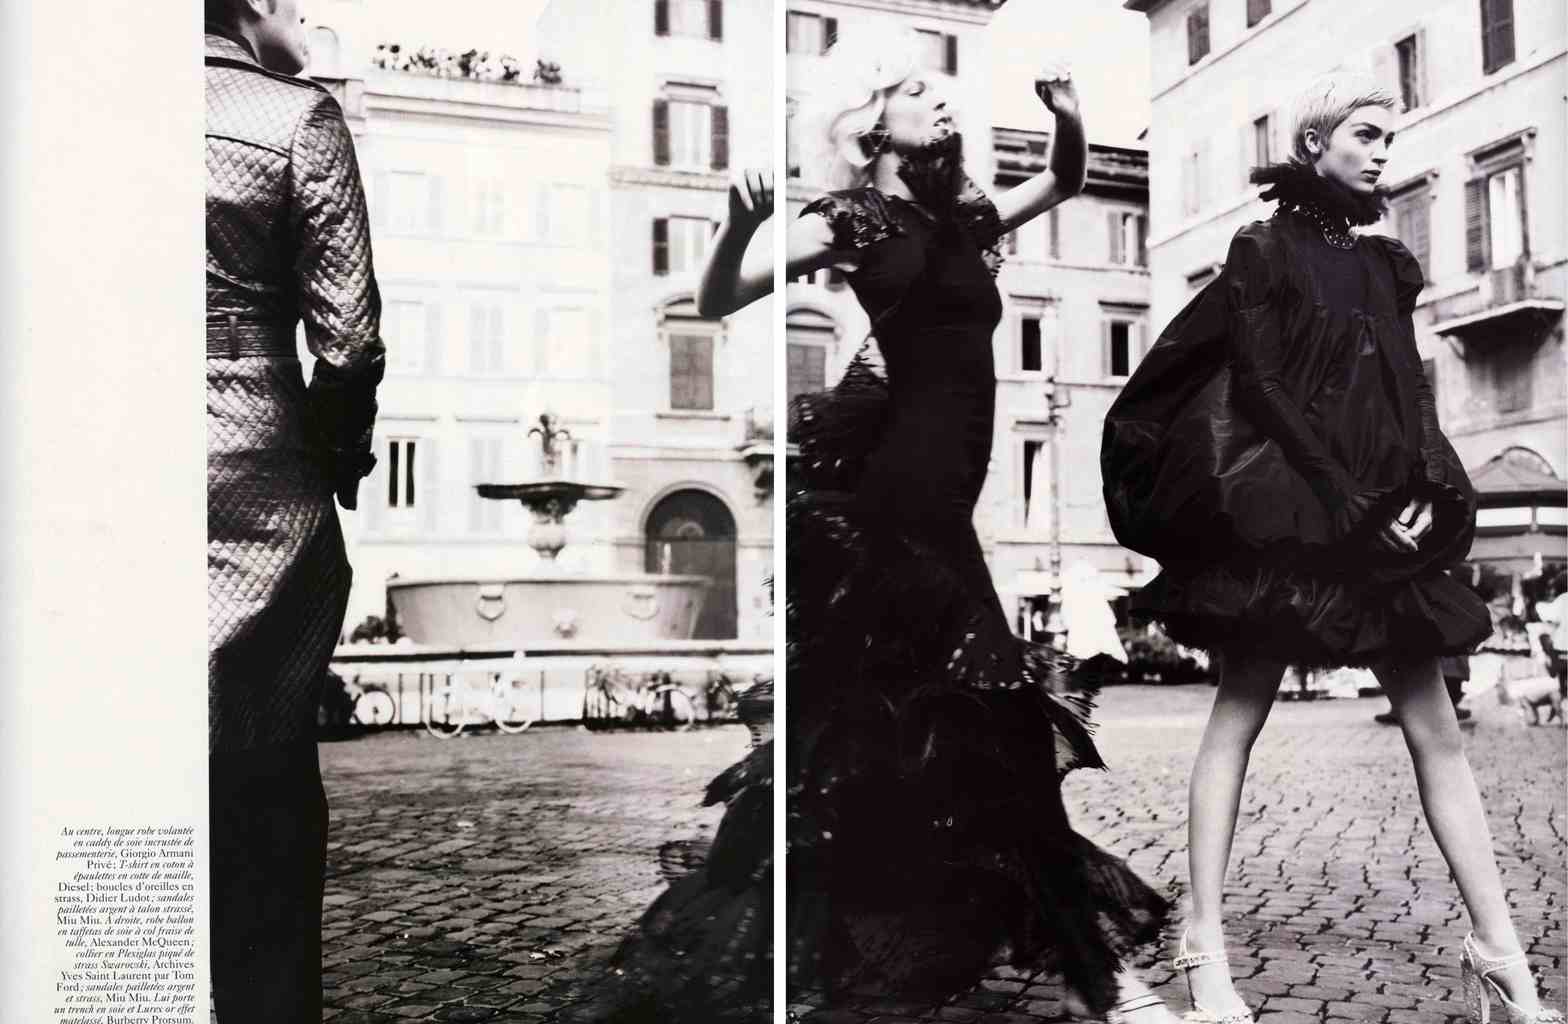 VOGUE PARIS - 2006
Photographer: Mario Testino
Model: Carine Roitfeld
Stylist: Eva Herzigova - Mariacarla Boscono
Location: Rome - Italy